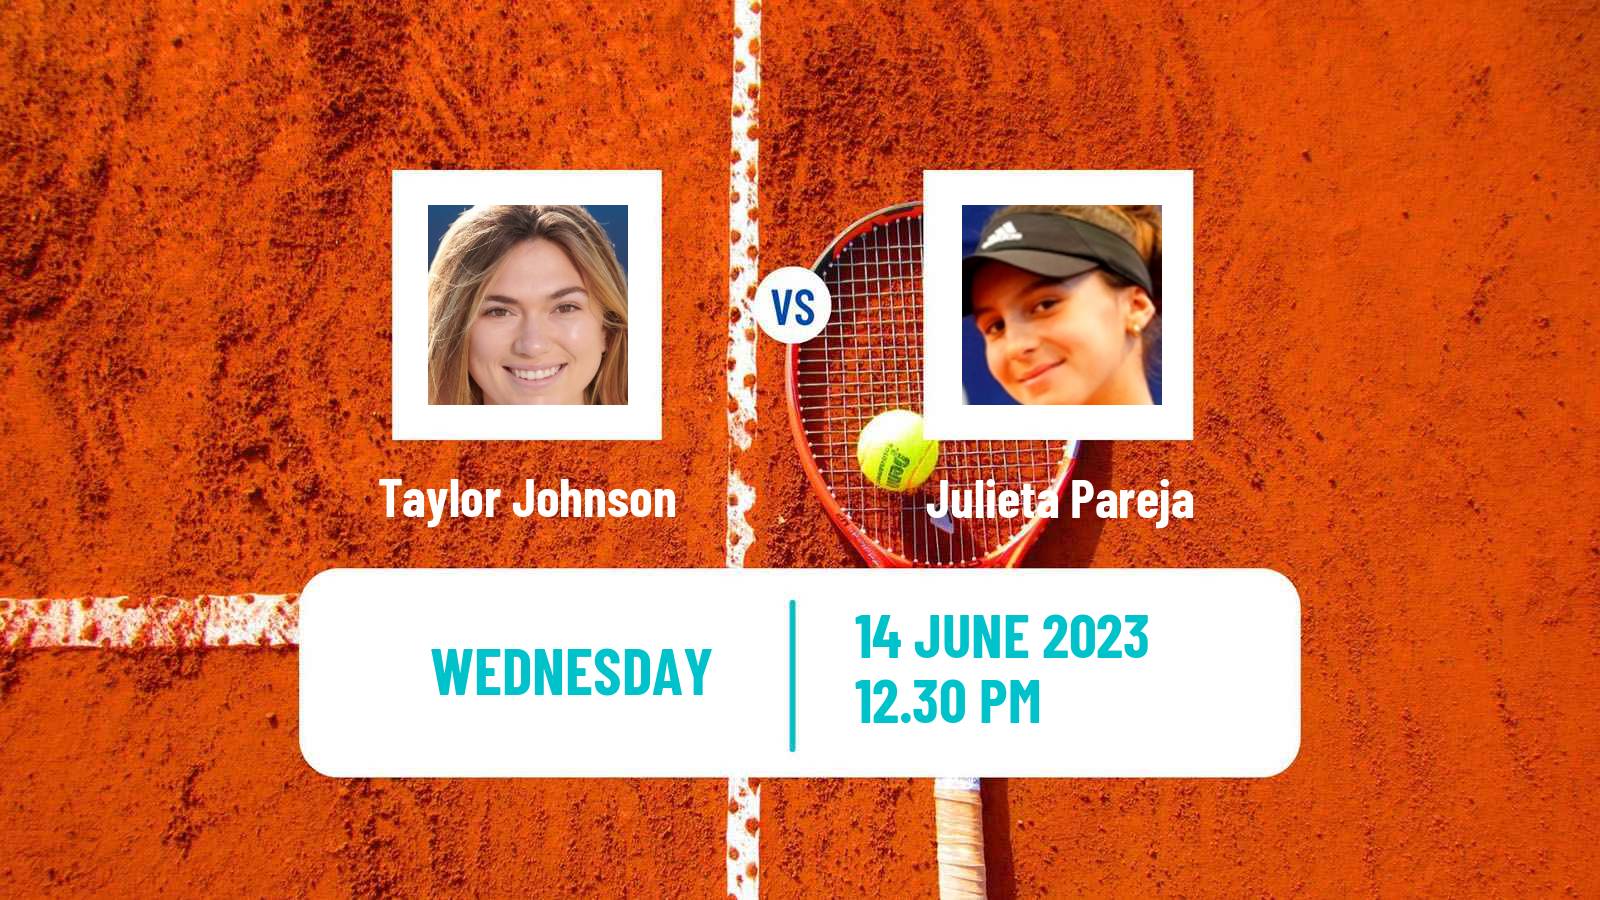 Tennis ITF W15 San Diego Ca 2 Women Taylor Johnson - Julieta Pareja